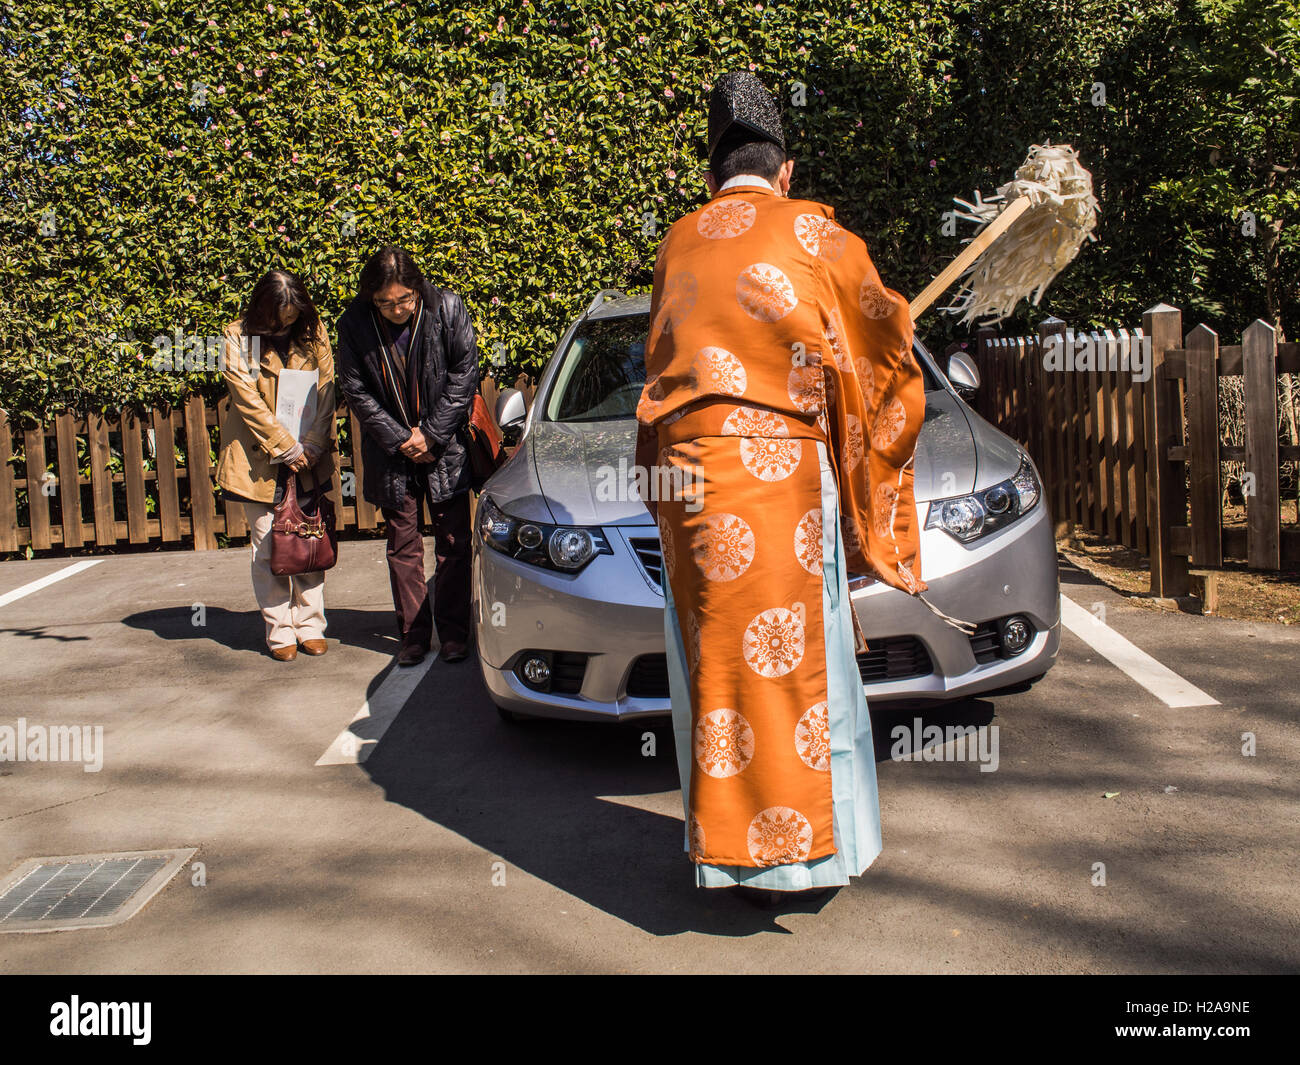 Lo Shintoismo rituale. Hikawa Shrine, Omiya. Due donne giapponesi archetto come un sacerdote scintoista esegue il rituale di purificazione sulla loro auto. Foto Stock